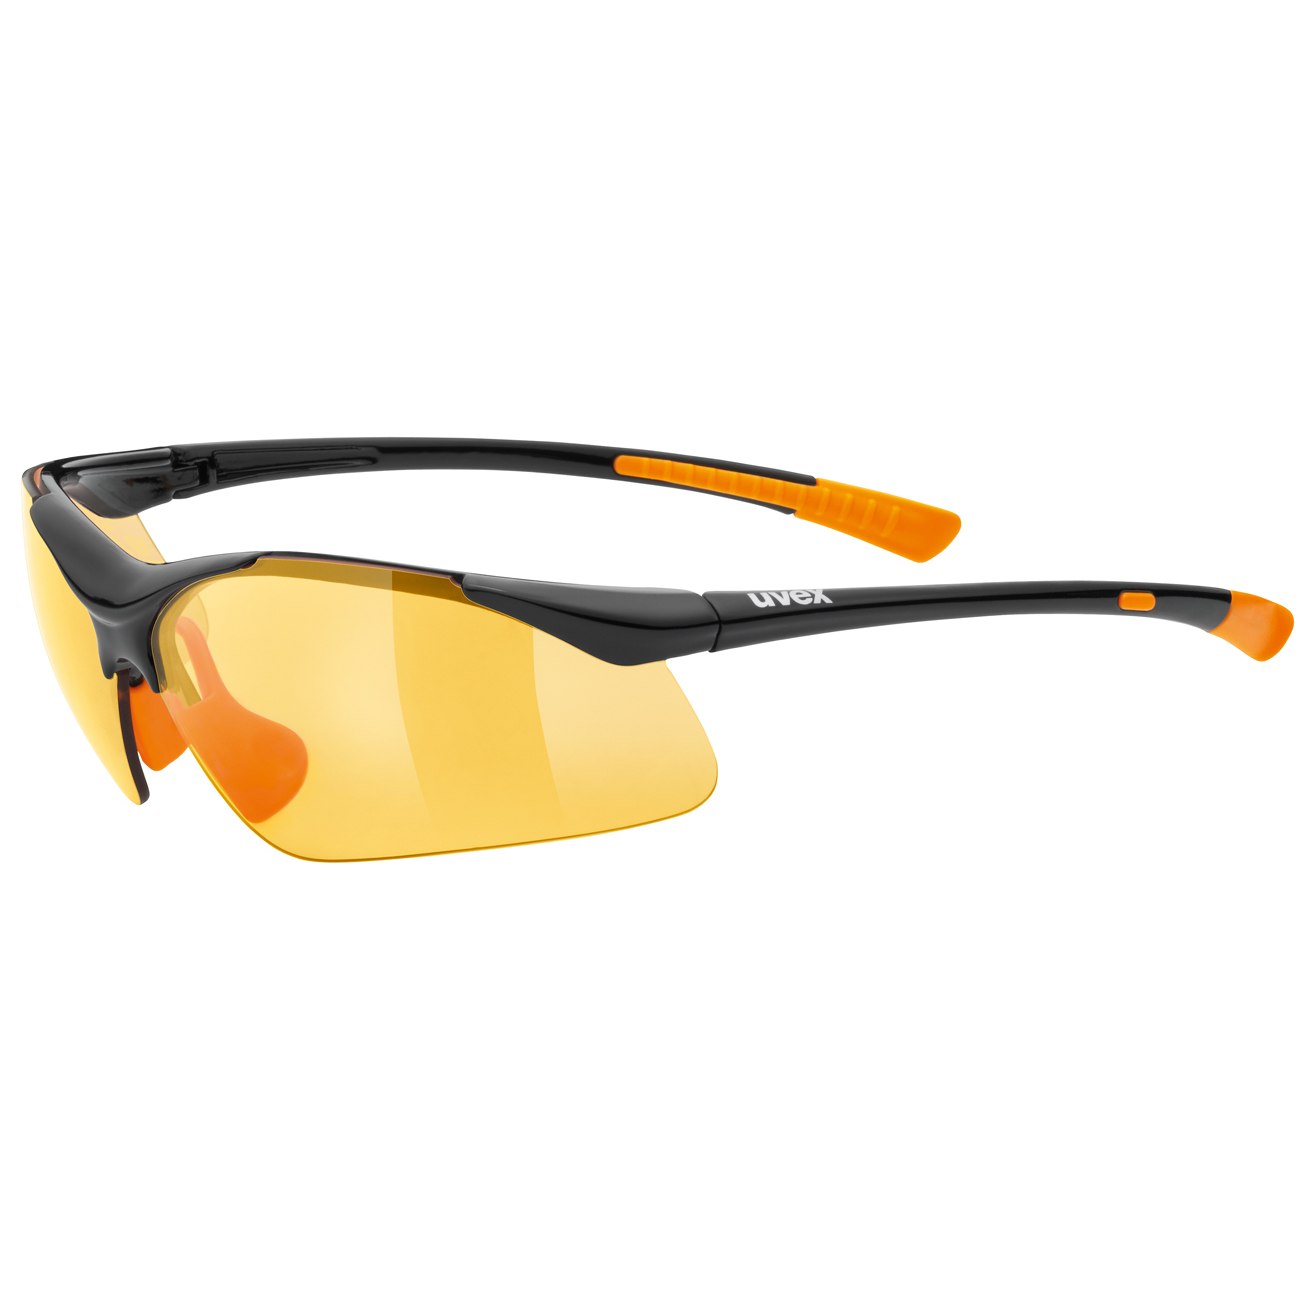 Produktbild von Uvex sportstyle 223 Brille - black orange/litemirror orange